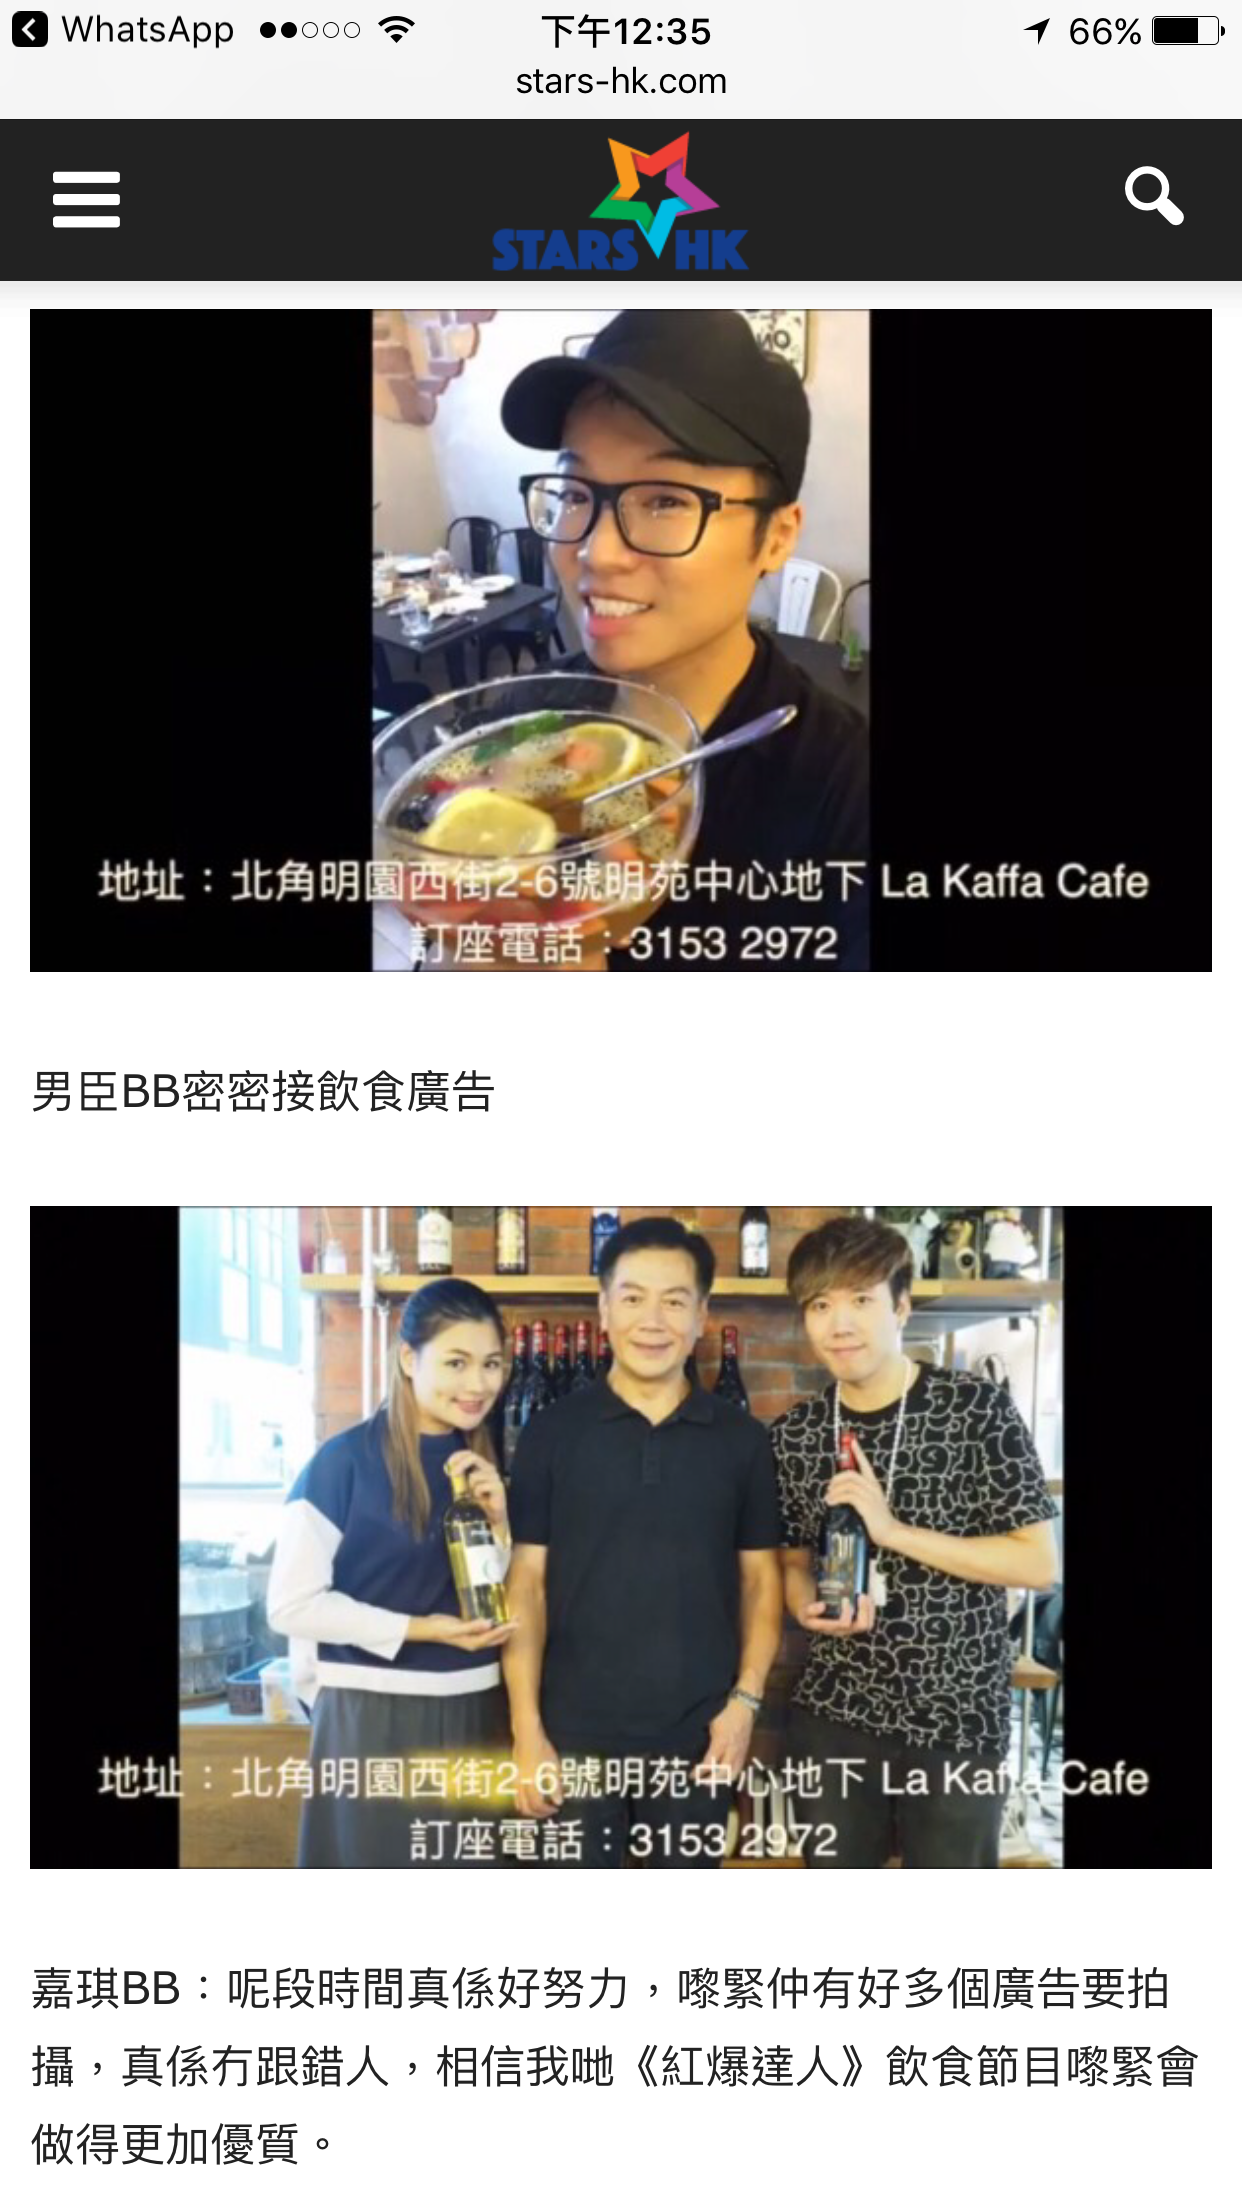 演藝人曲赤 K-CHEK之媒體報導: 男臣BB《食爆香港》 第七集 高質素食物、平民化價錢《La Kaffa Cafe》